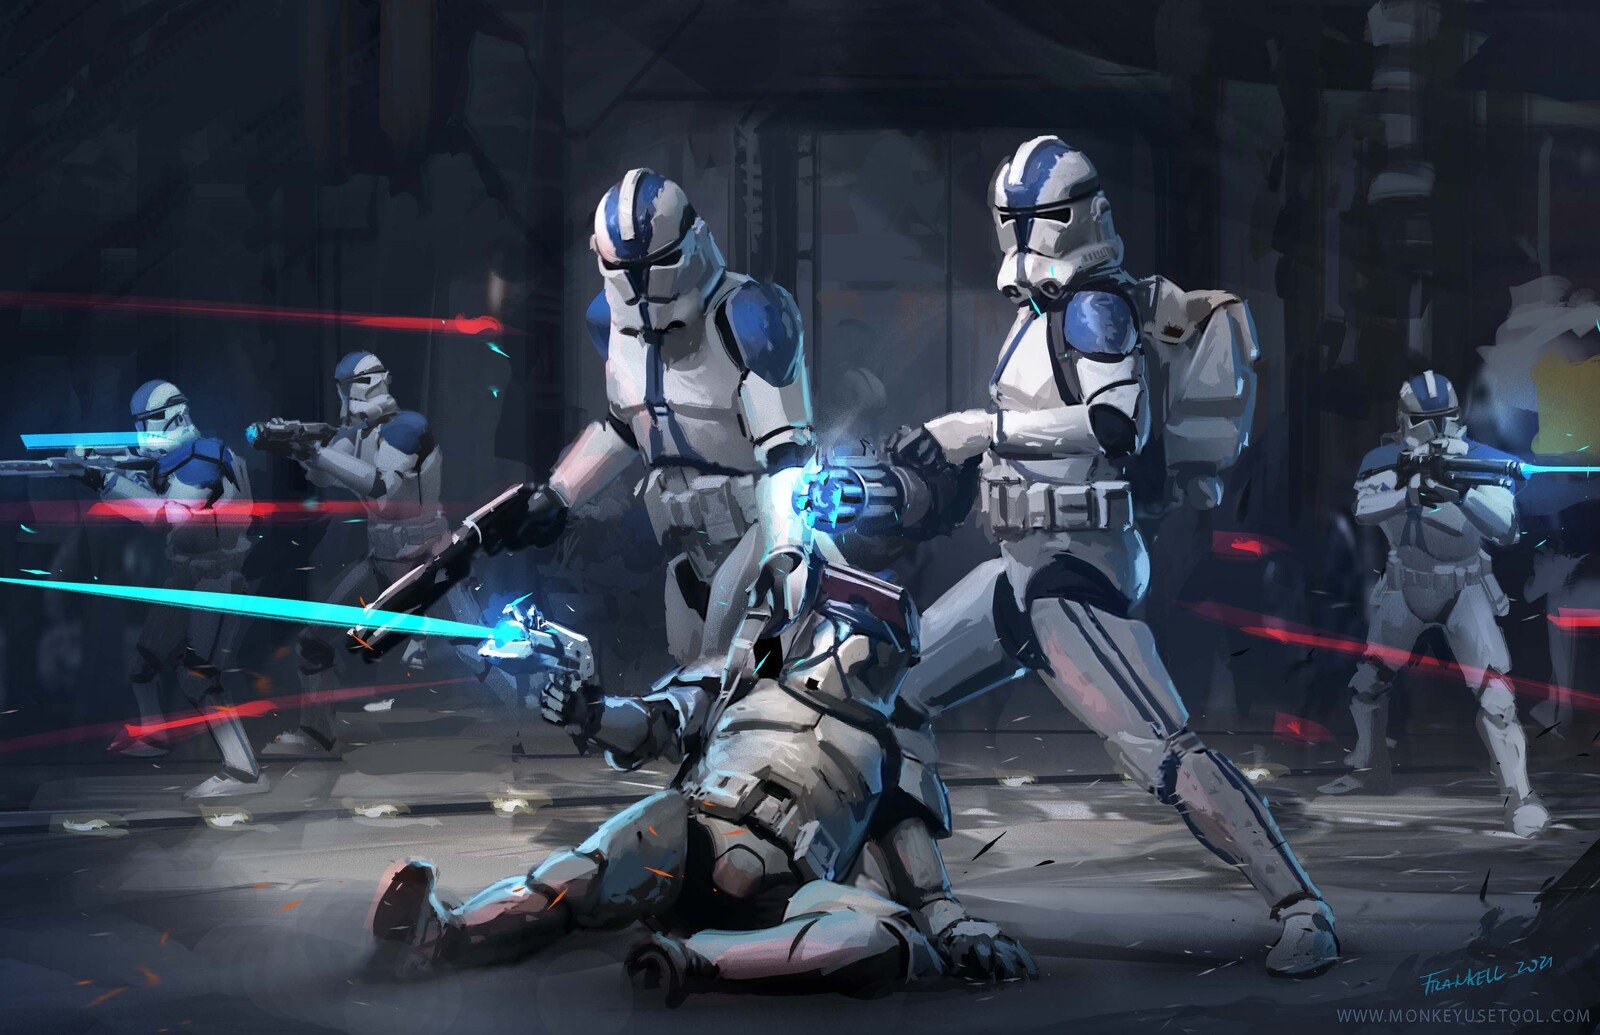 501st Clone Troopers, Star Wars. FAN ART, Frankell Baramdyka